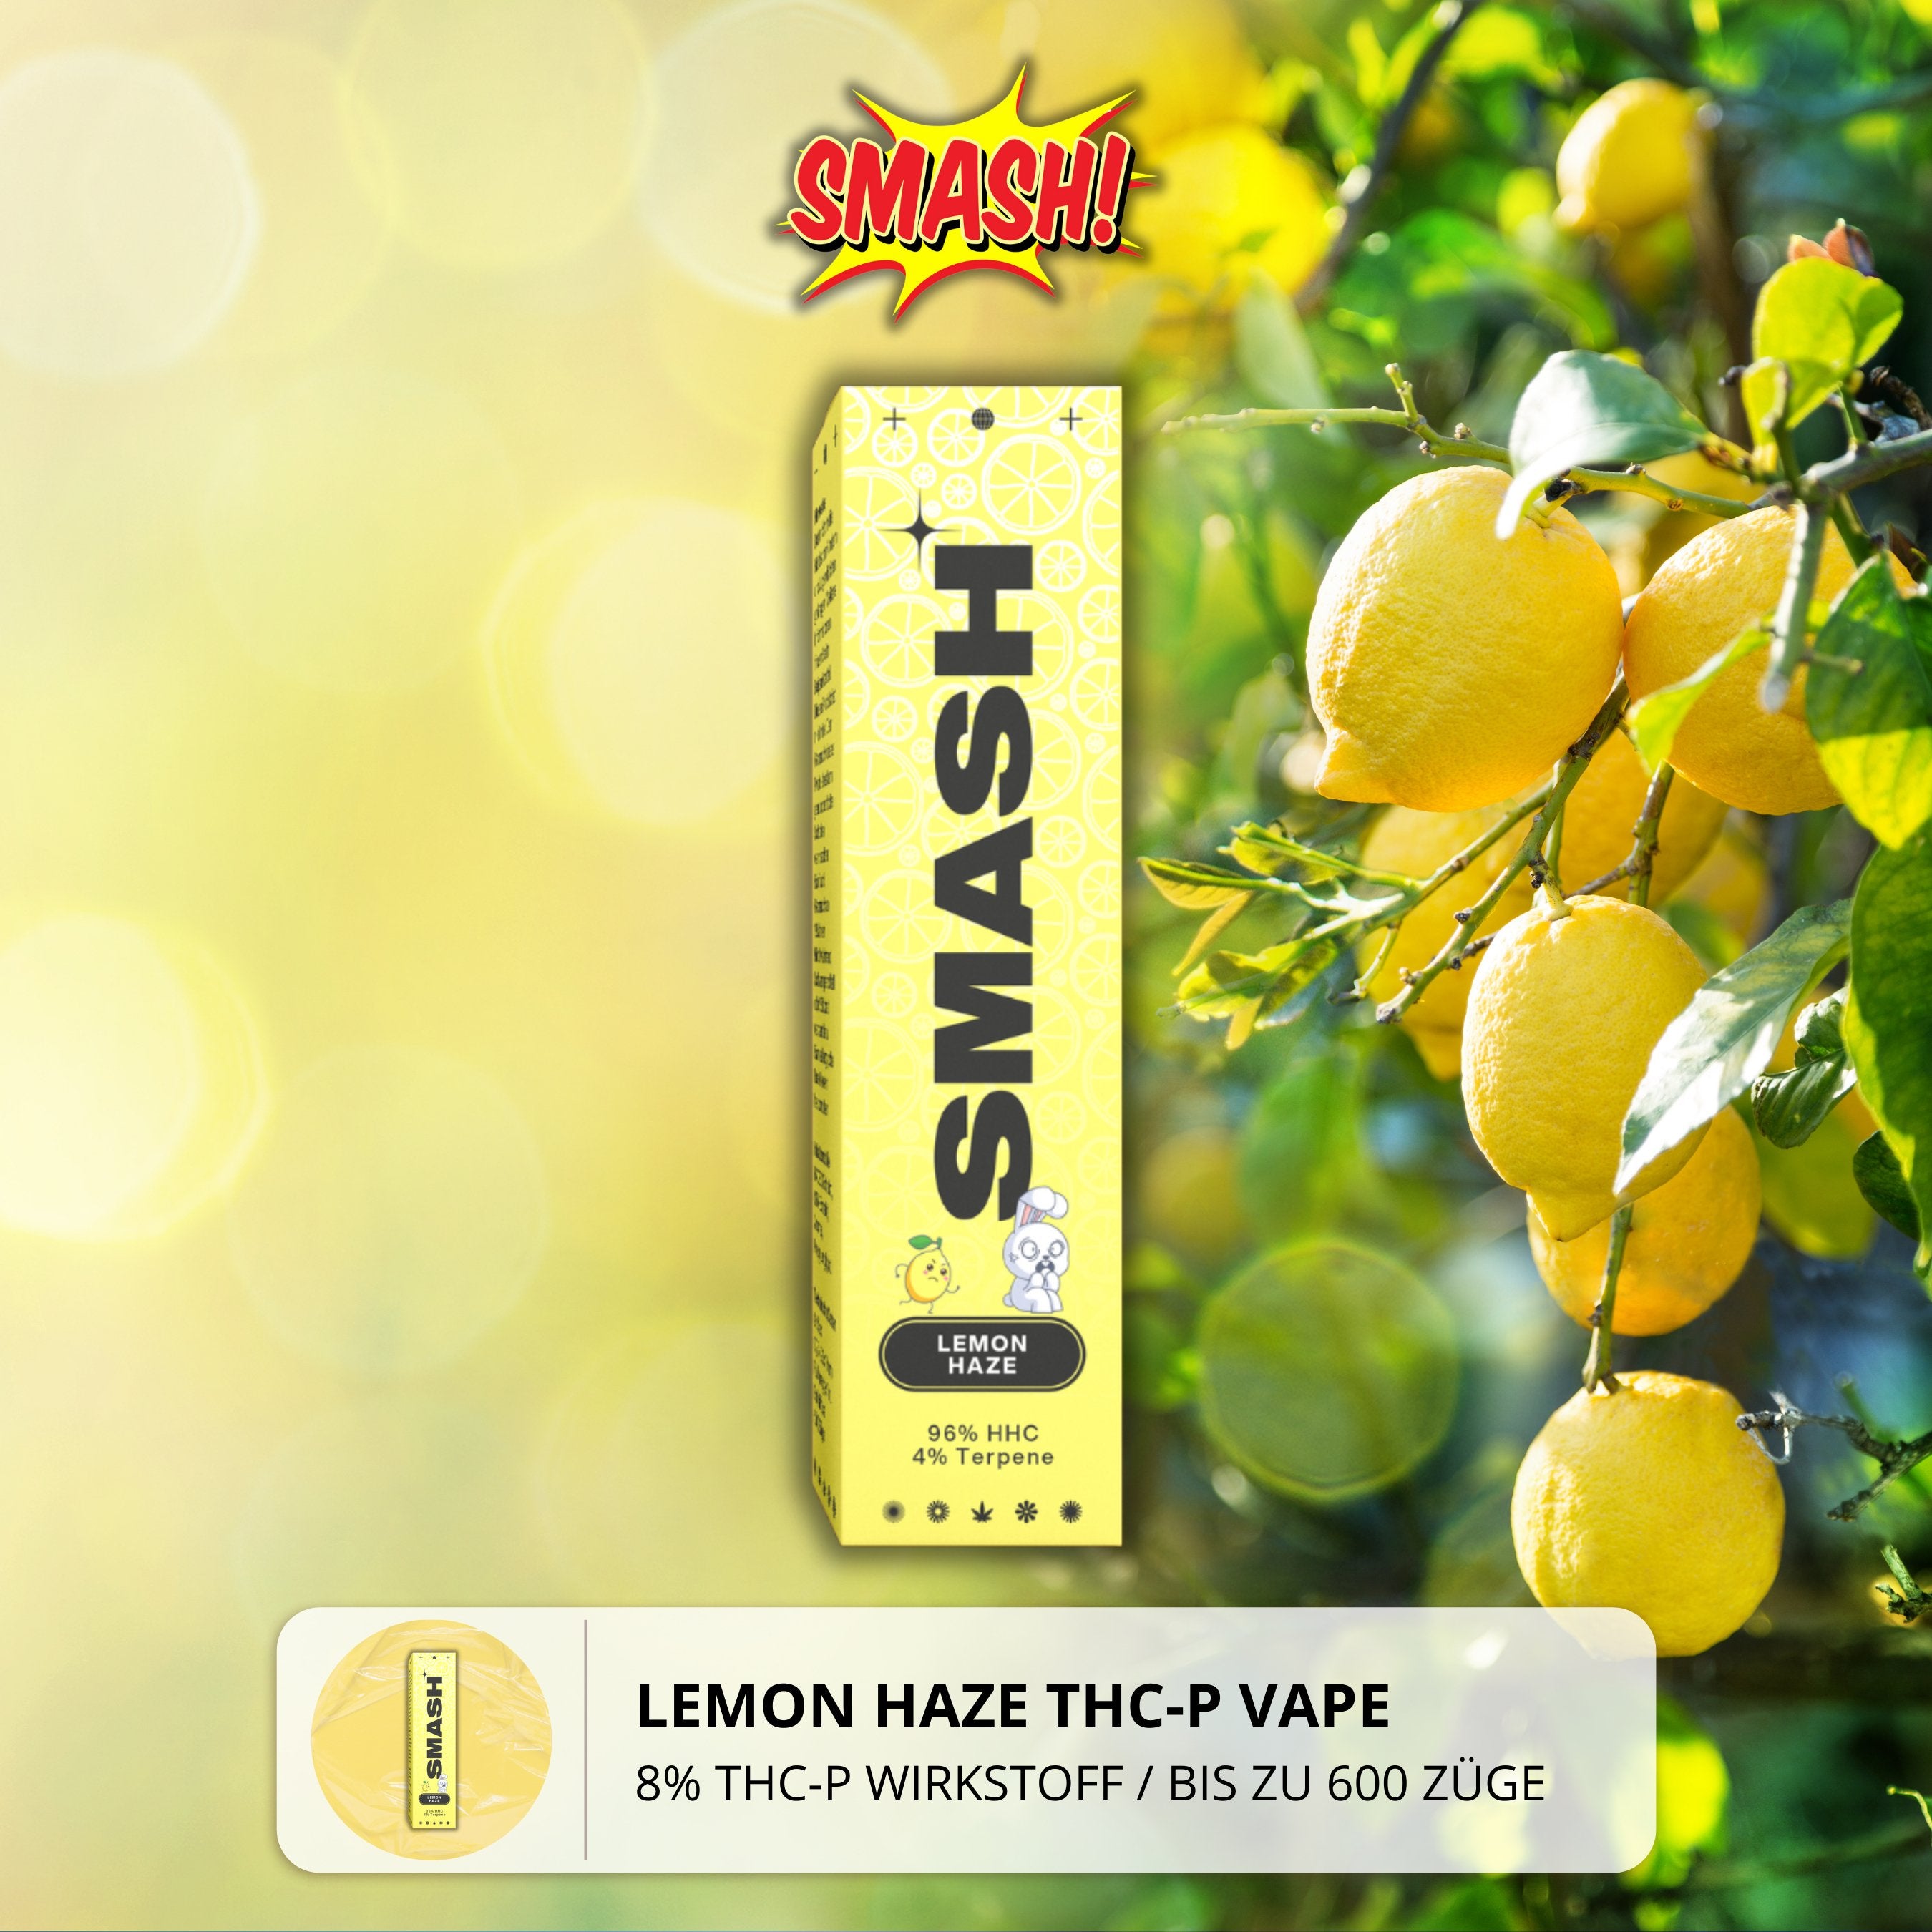 Smash THC-P Vape - Lemon Haze